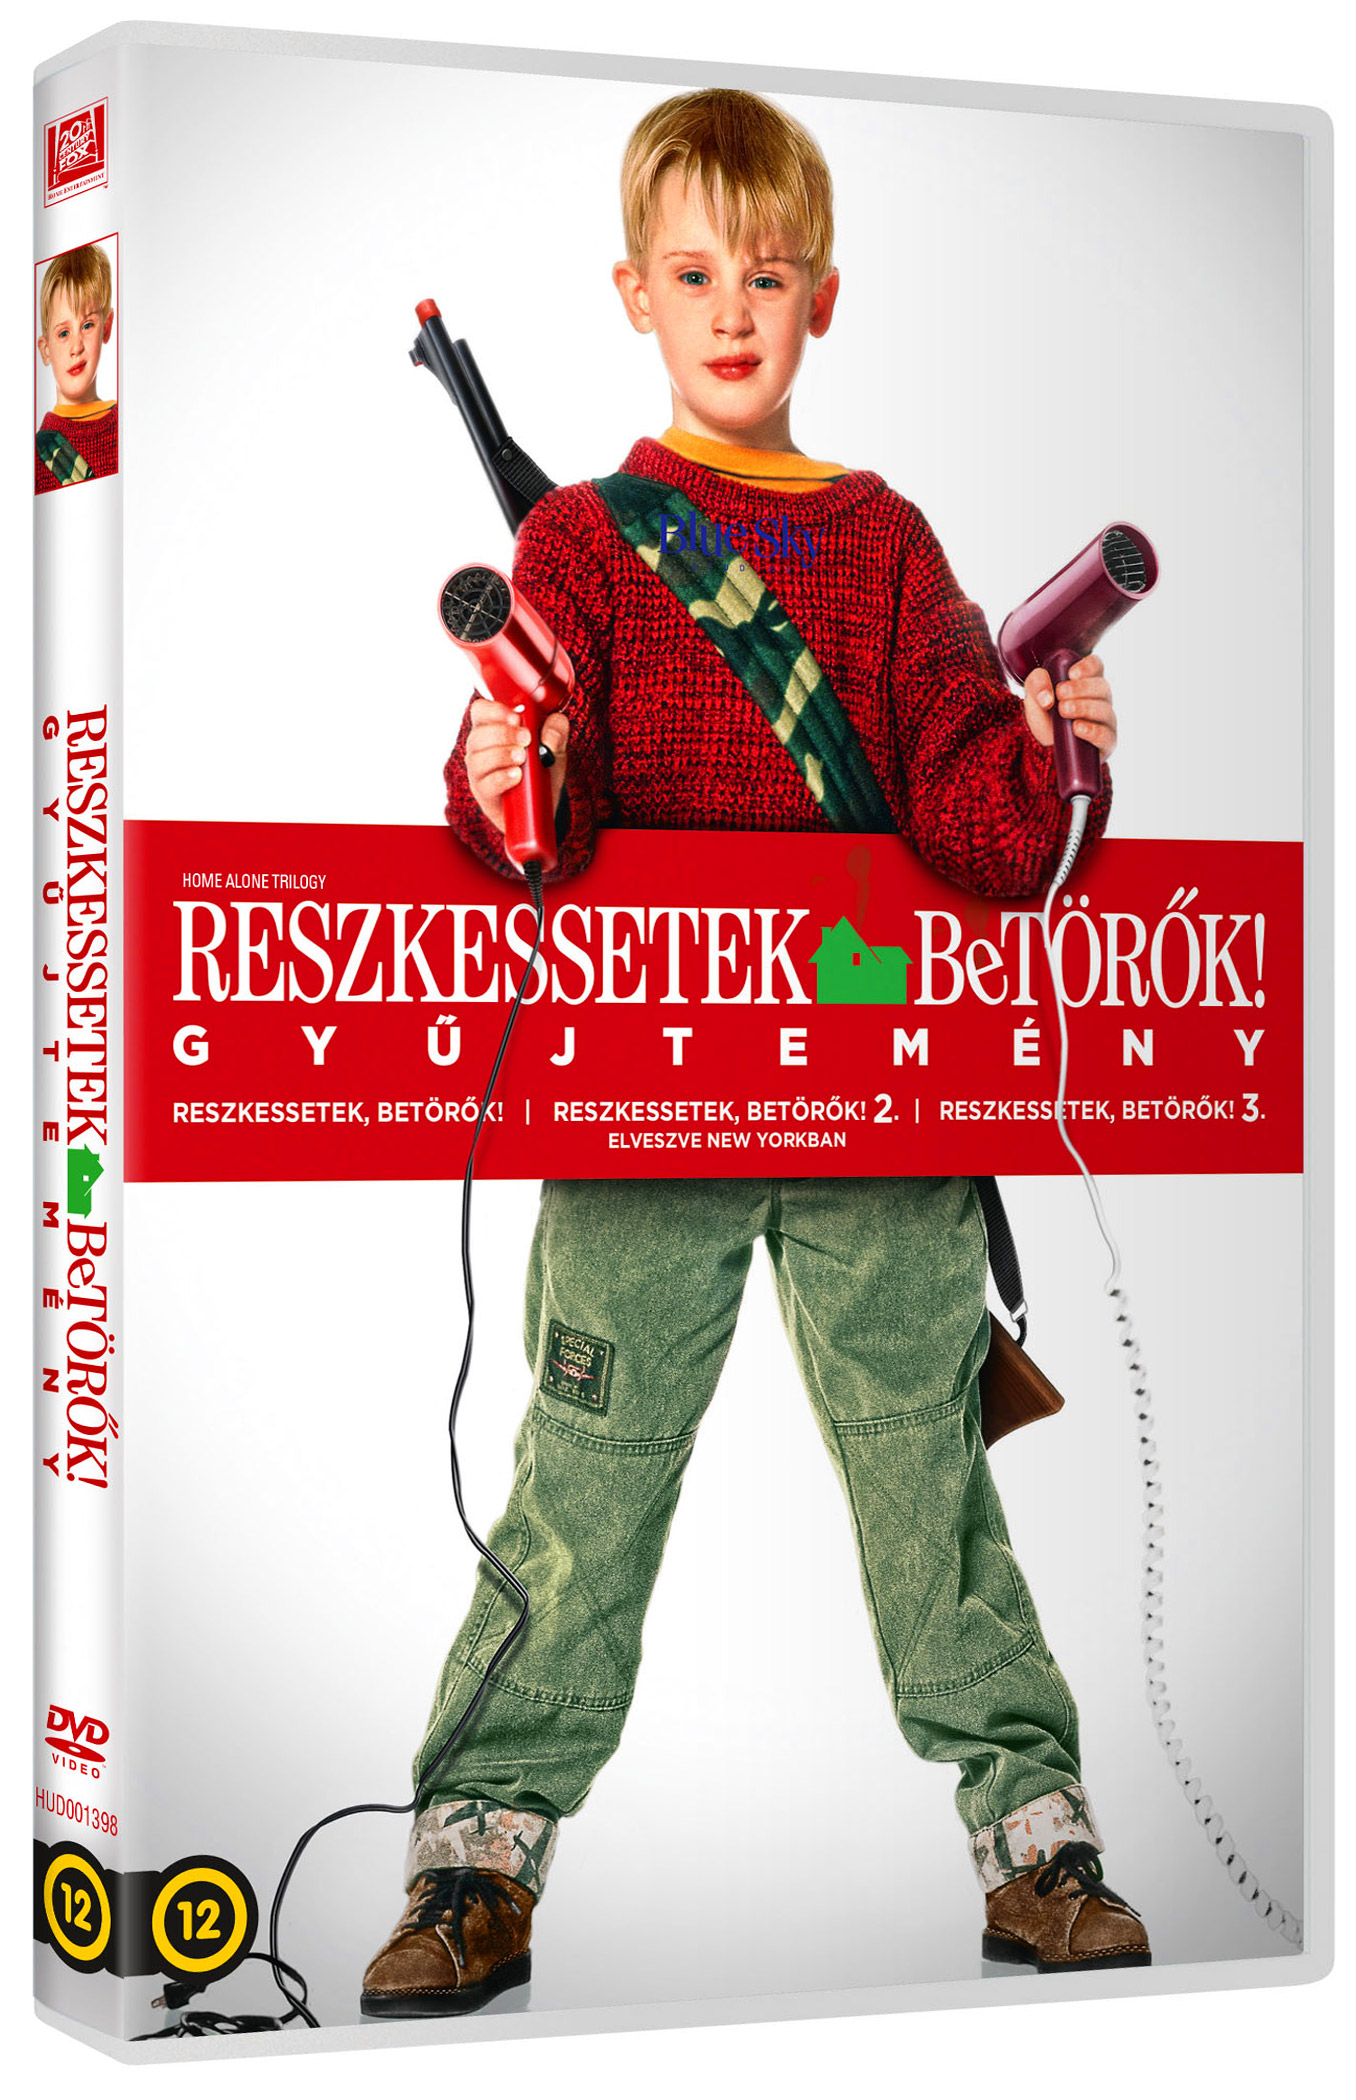 Reszkessetek, betörők! 3. DVD